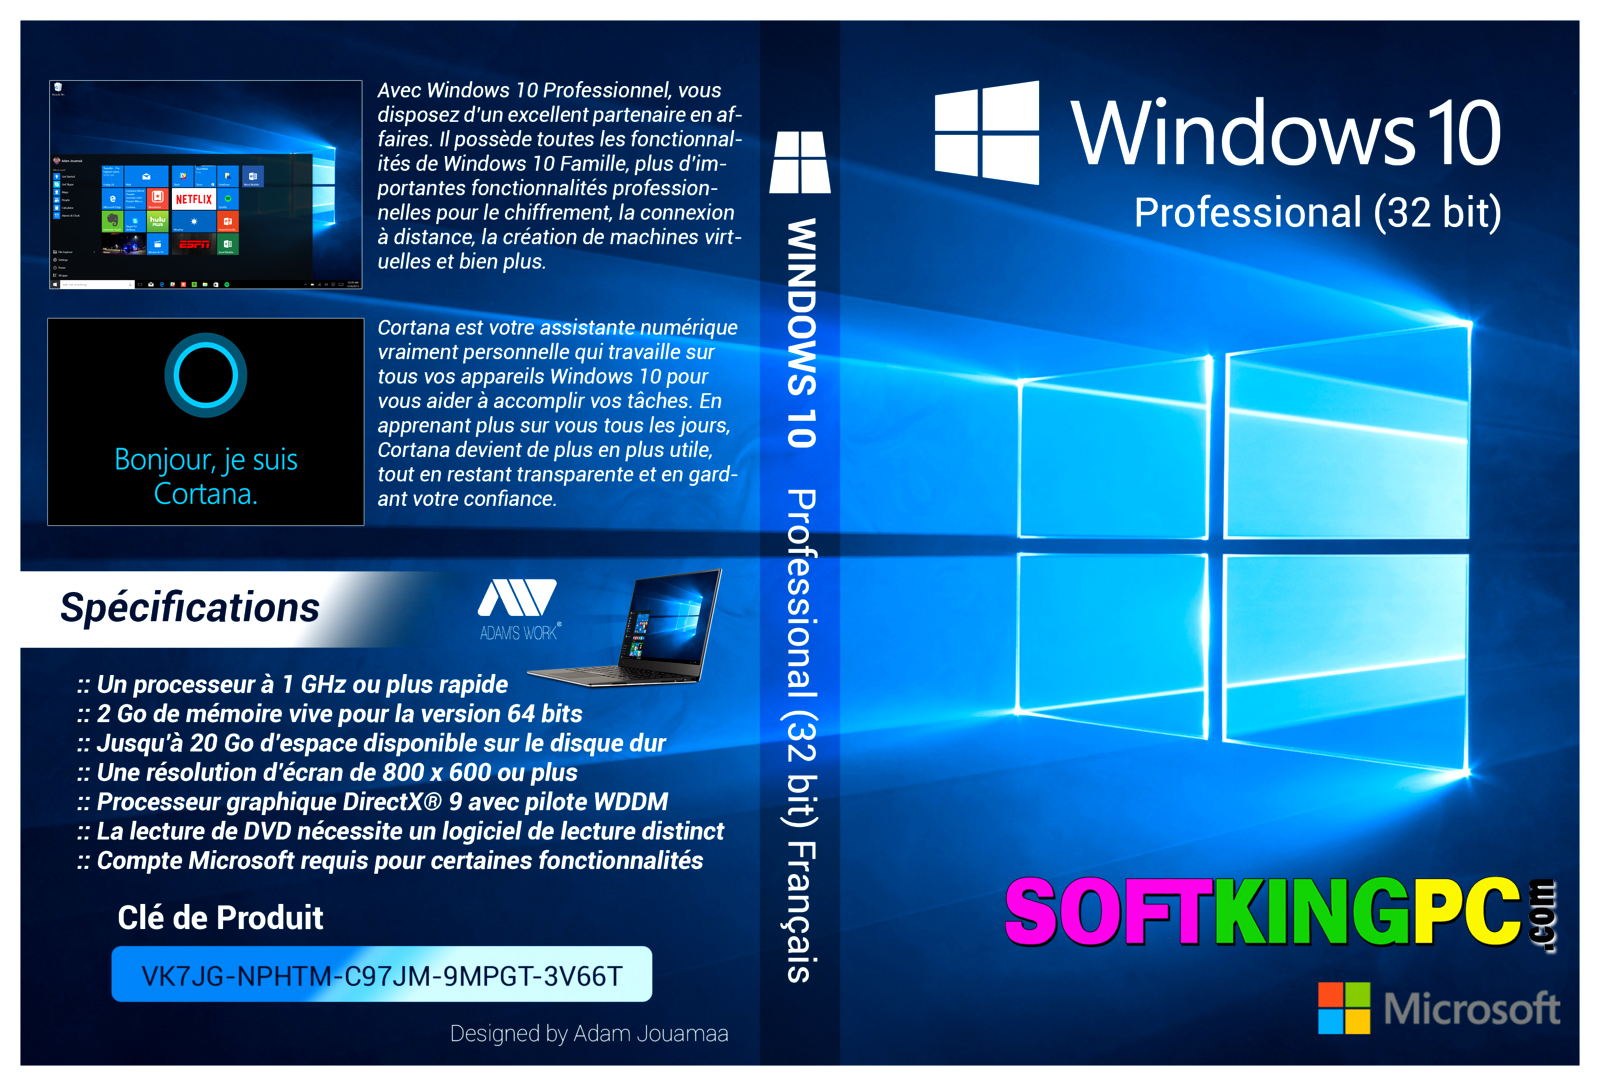 windows 10 32bit iso download